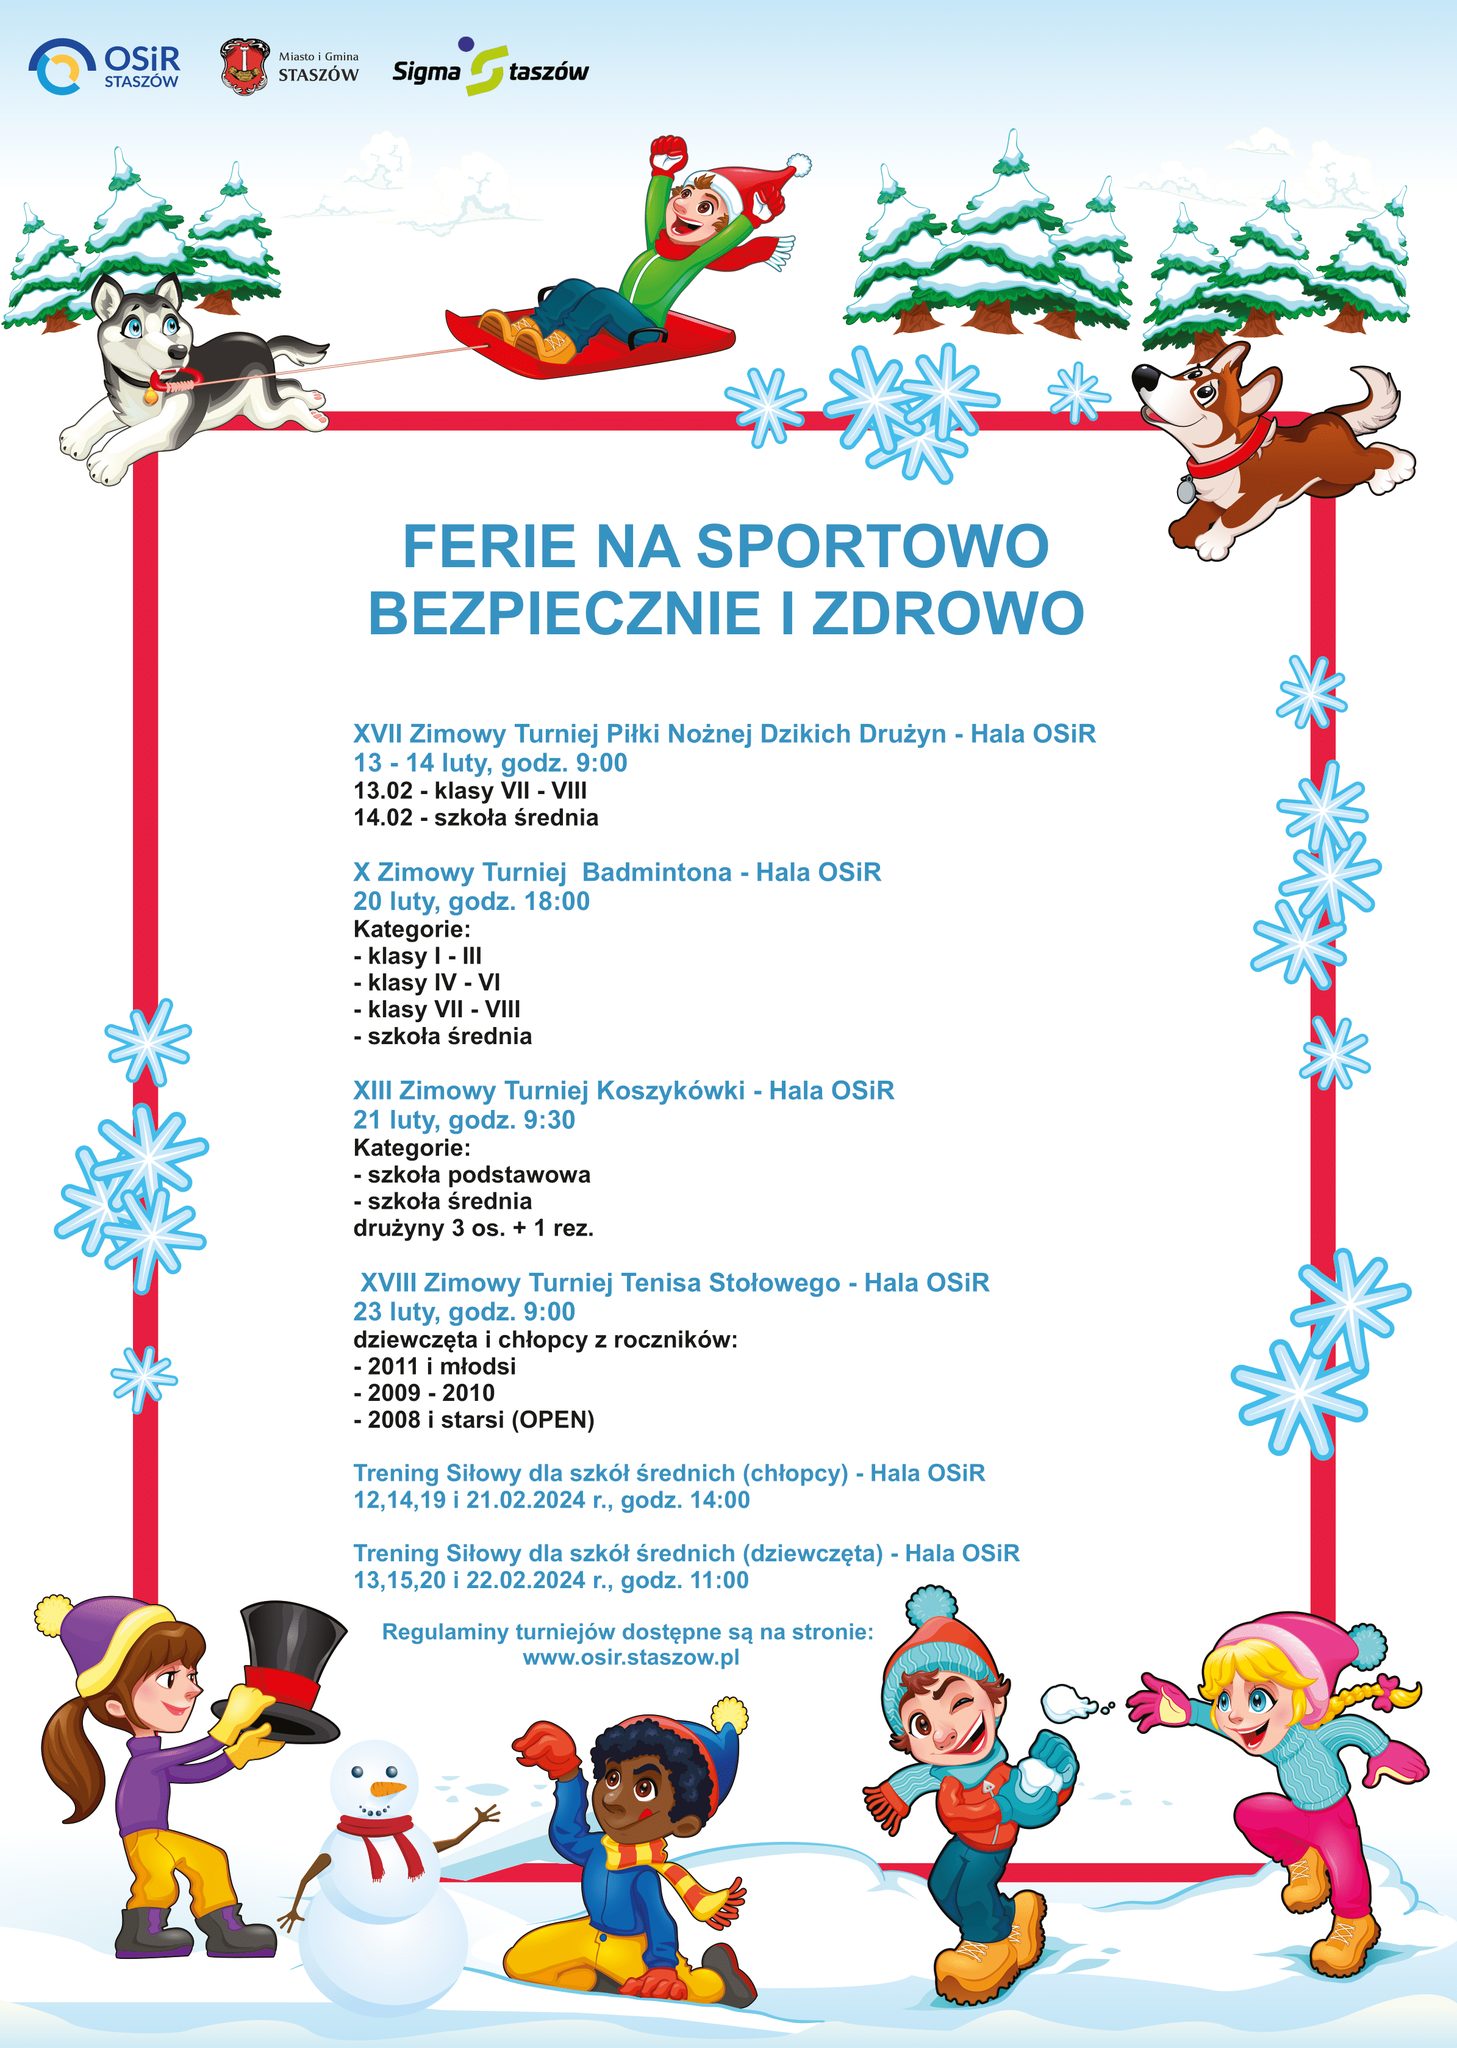 Turniejowy harmonogram ferii na SPORTOWO w Ośrodku Sportu i Rekreacji w Staszowie: